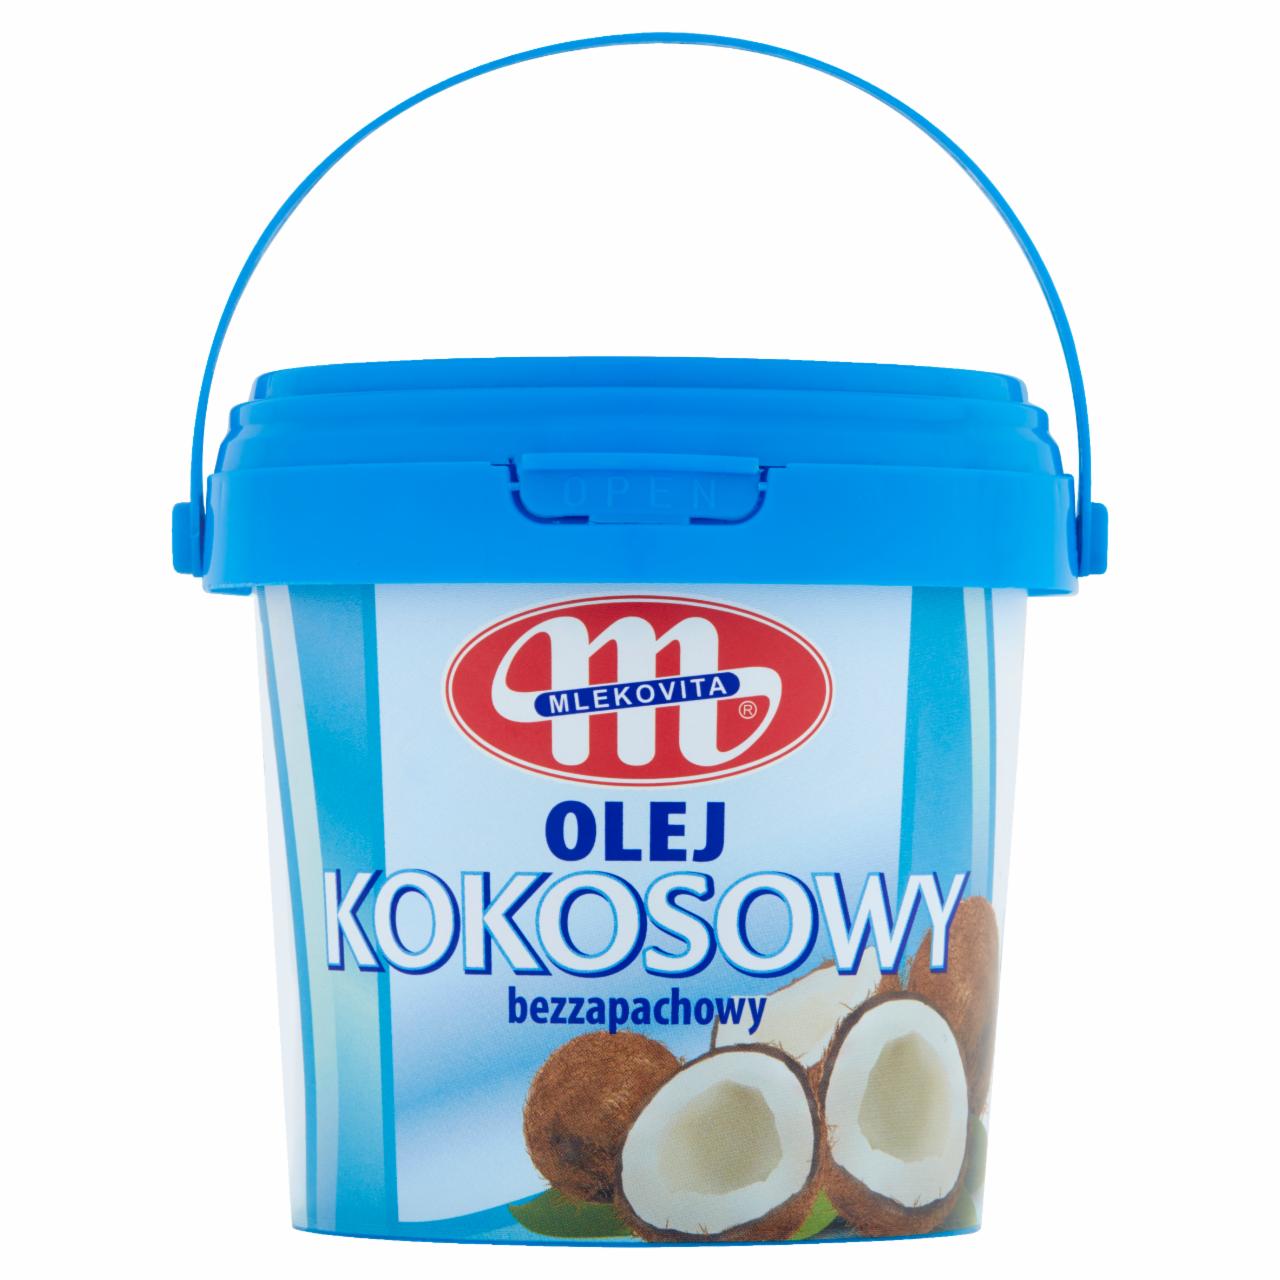 Zdjęcia - Mlekovita Olej kokosowy bezzapachowy 500 ml